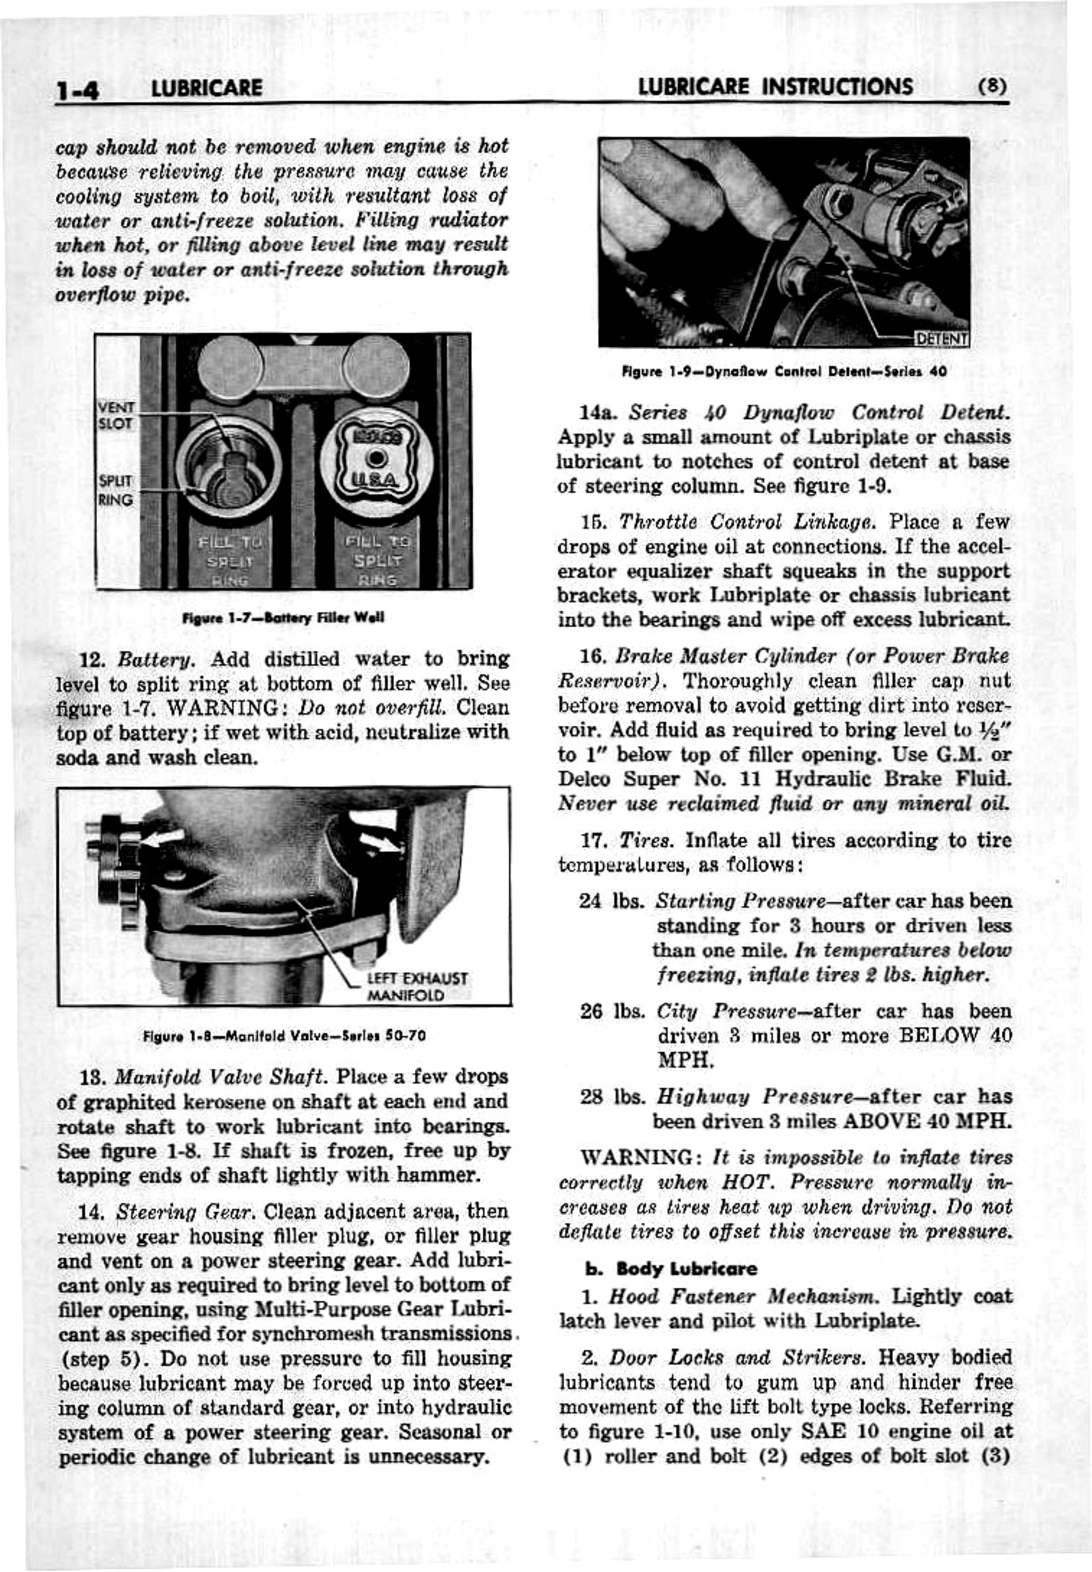 n_02 1953 Buick Shop Manual - Lubricare-004-004.jpg